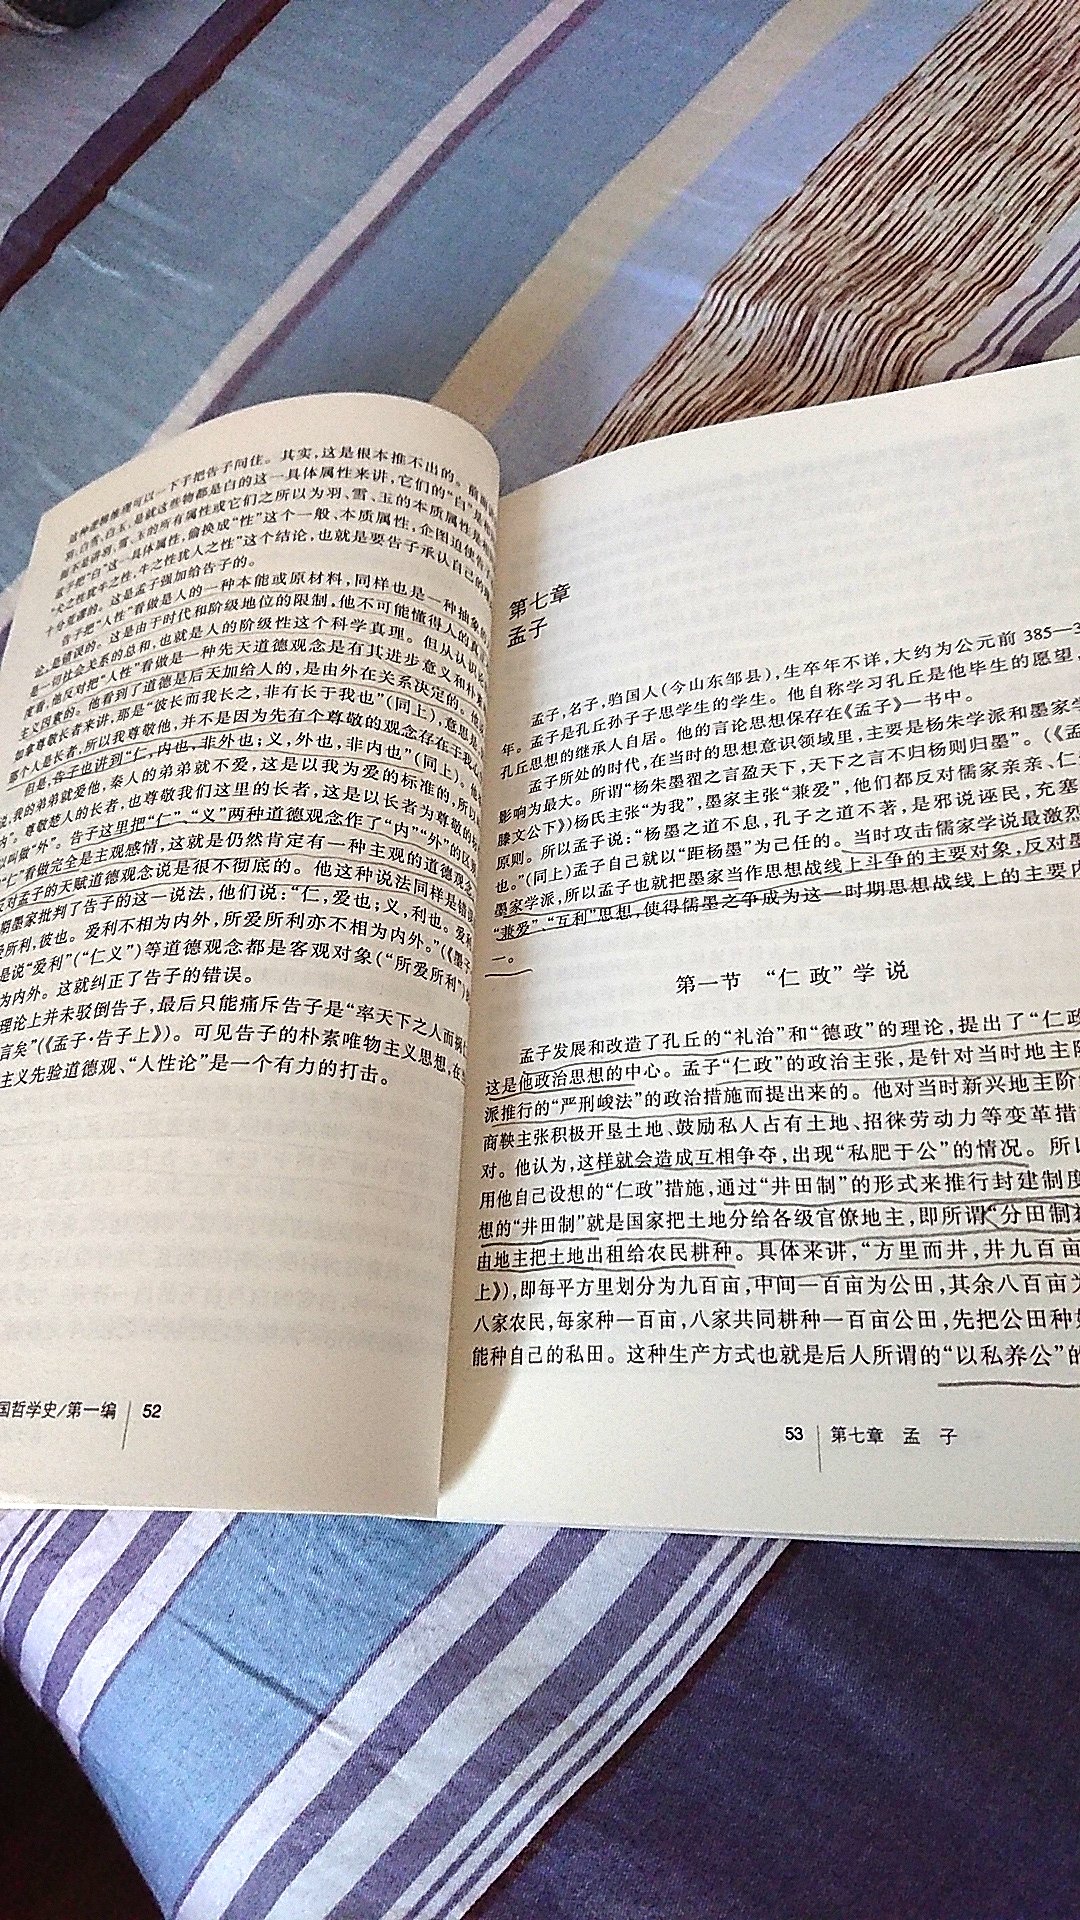 书正在看，觉得编写的不错。因为没有看过其他版本的中国哲学史，只能这么说了。